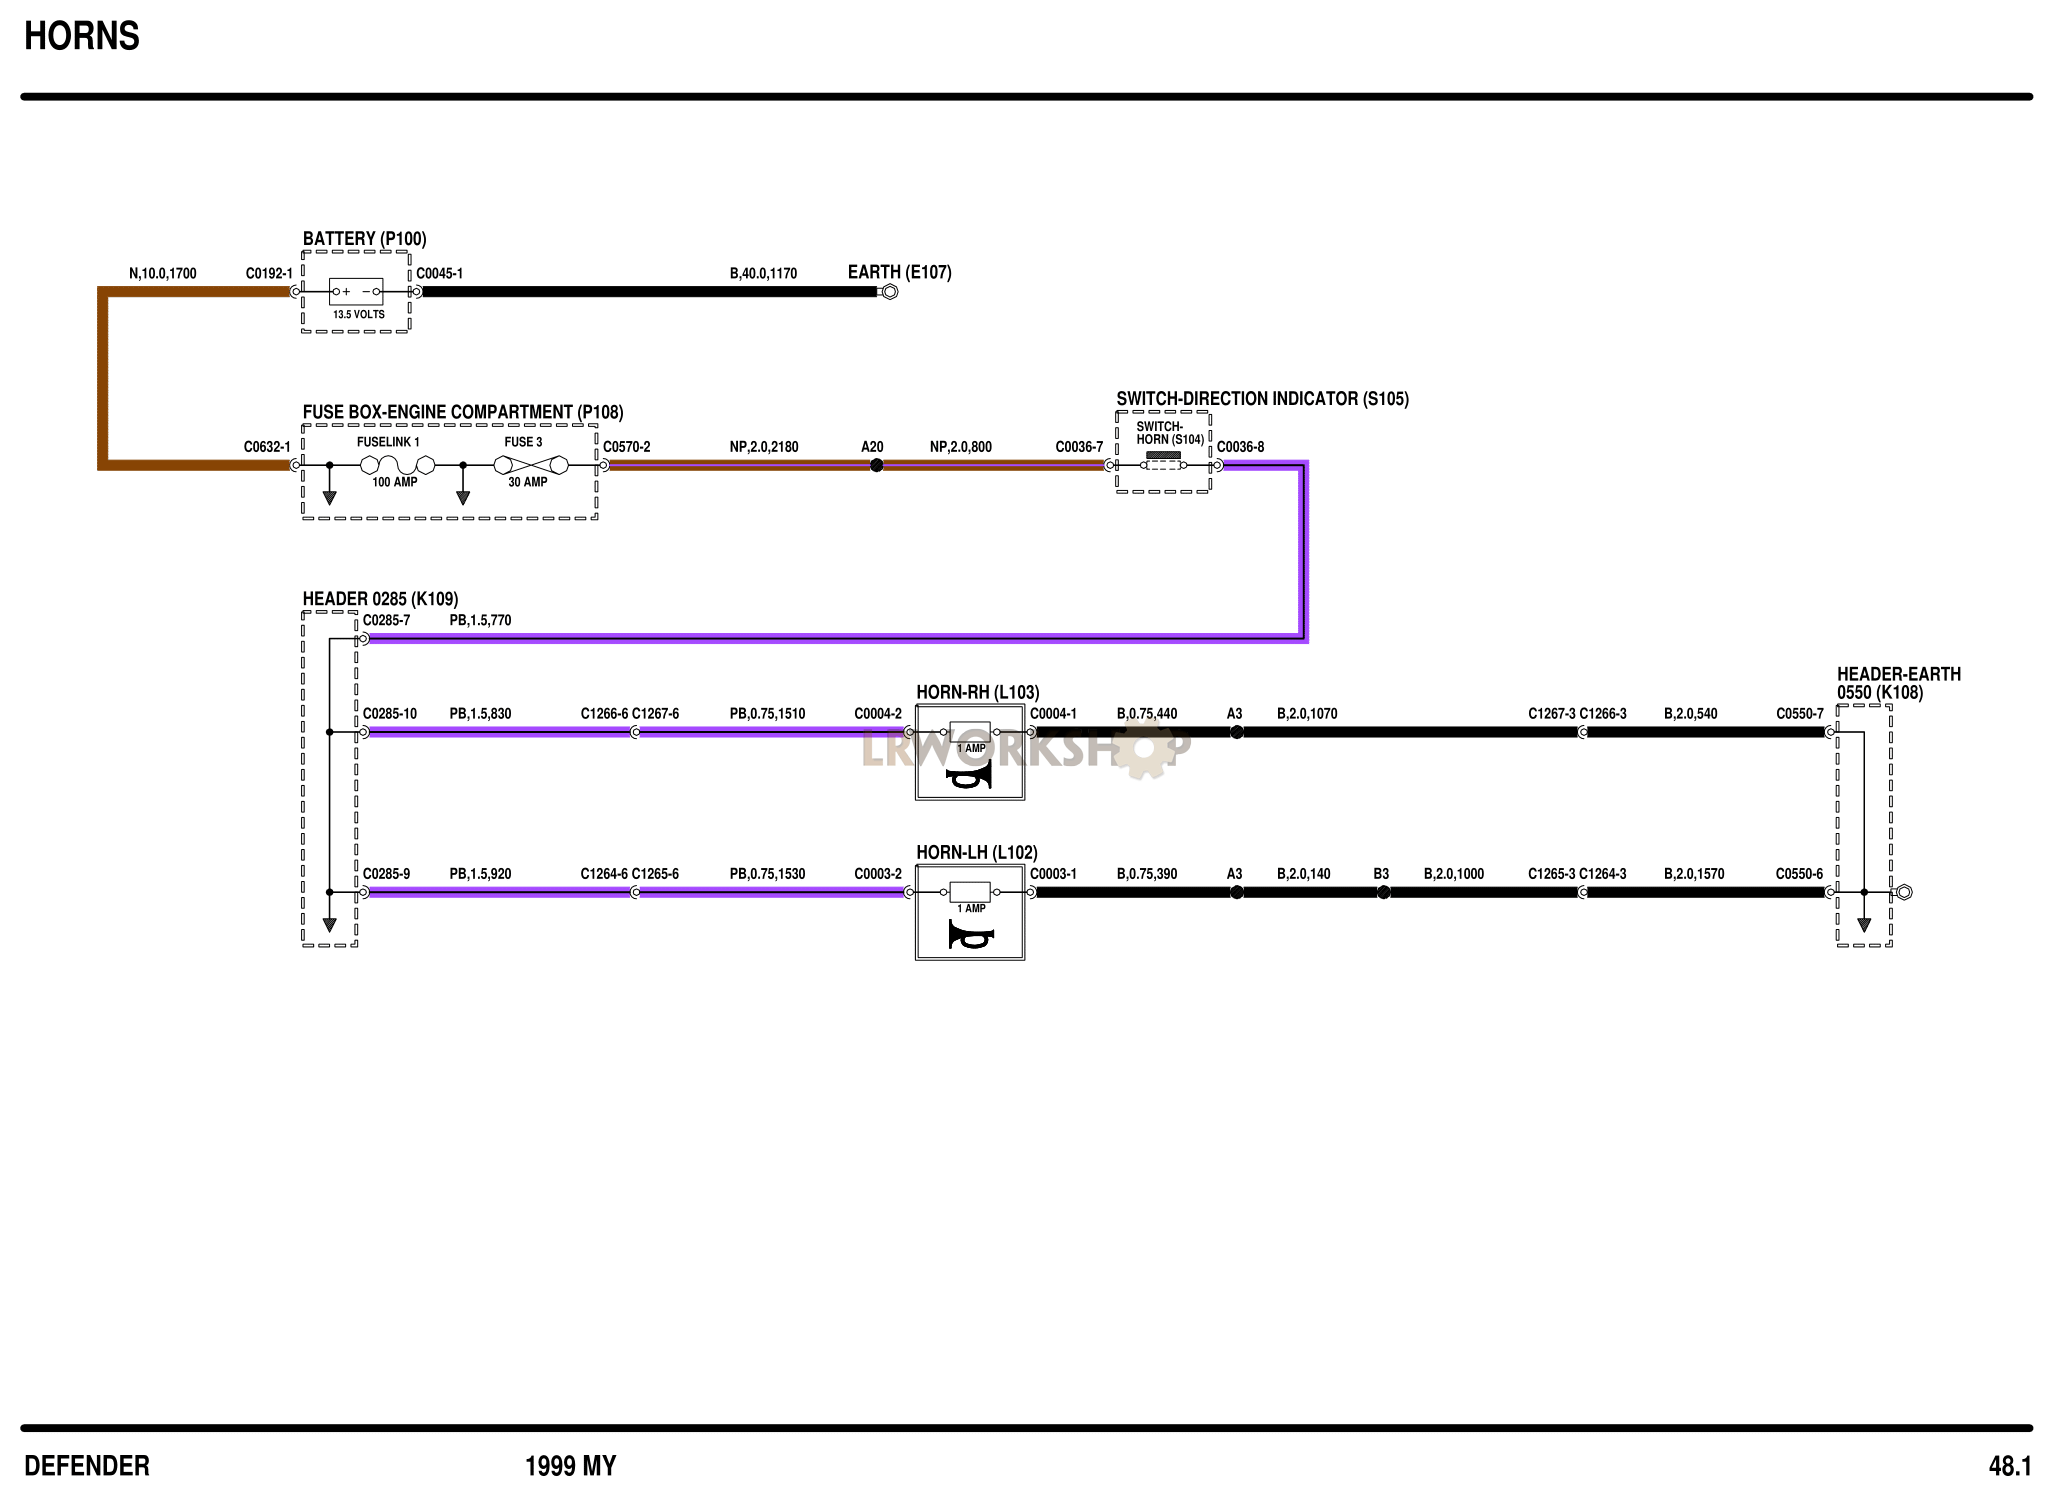 Horn(s) Part Diagram